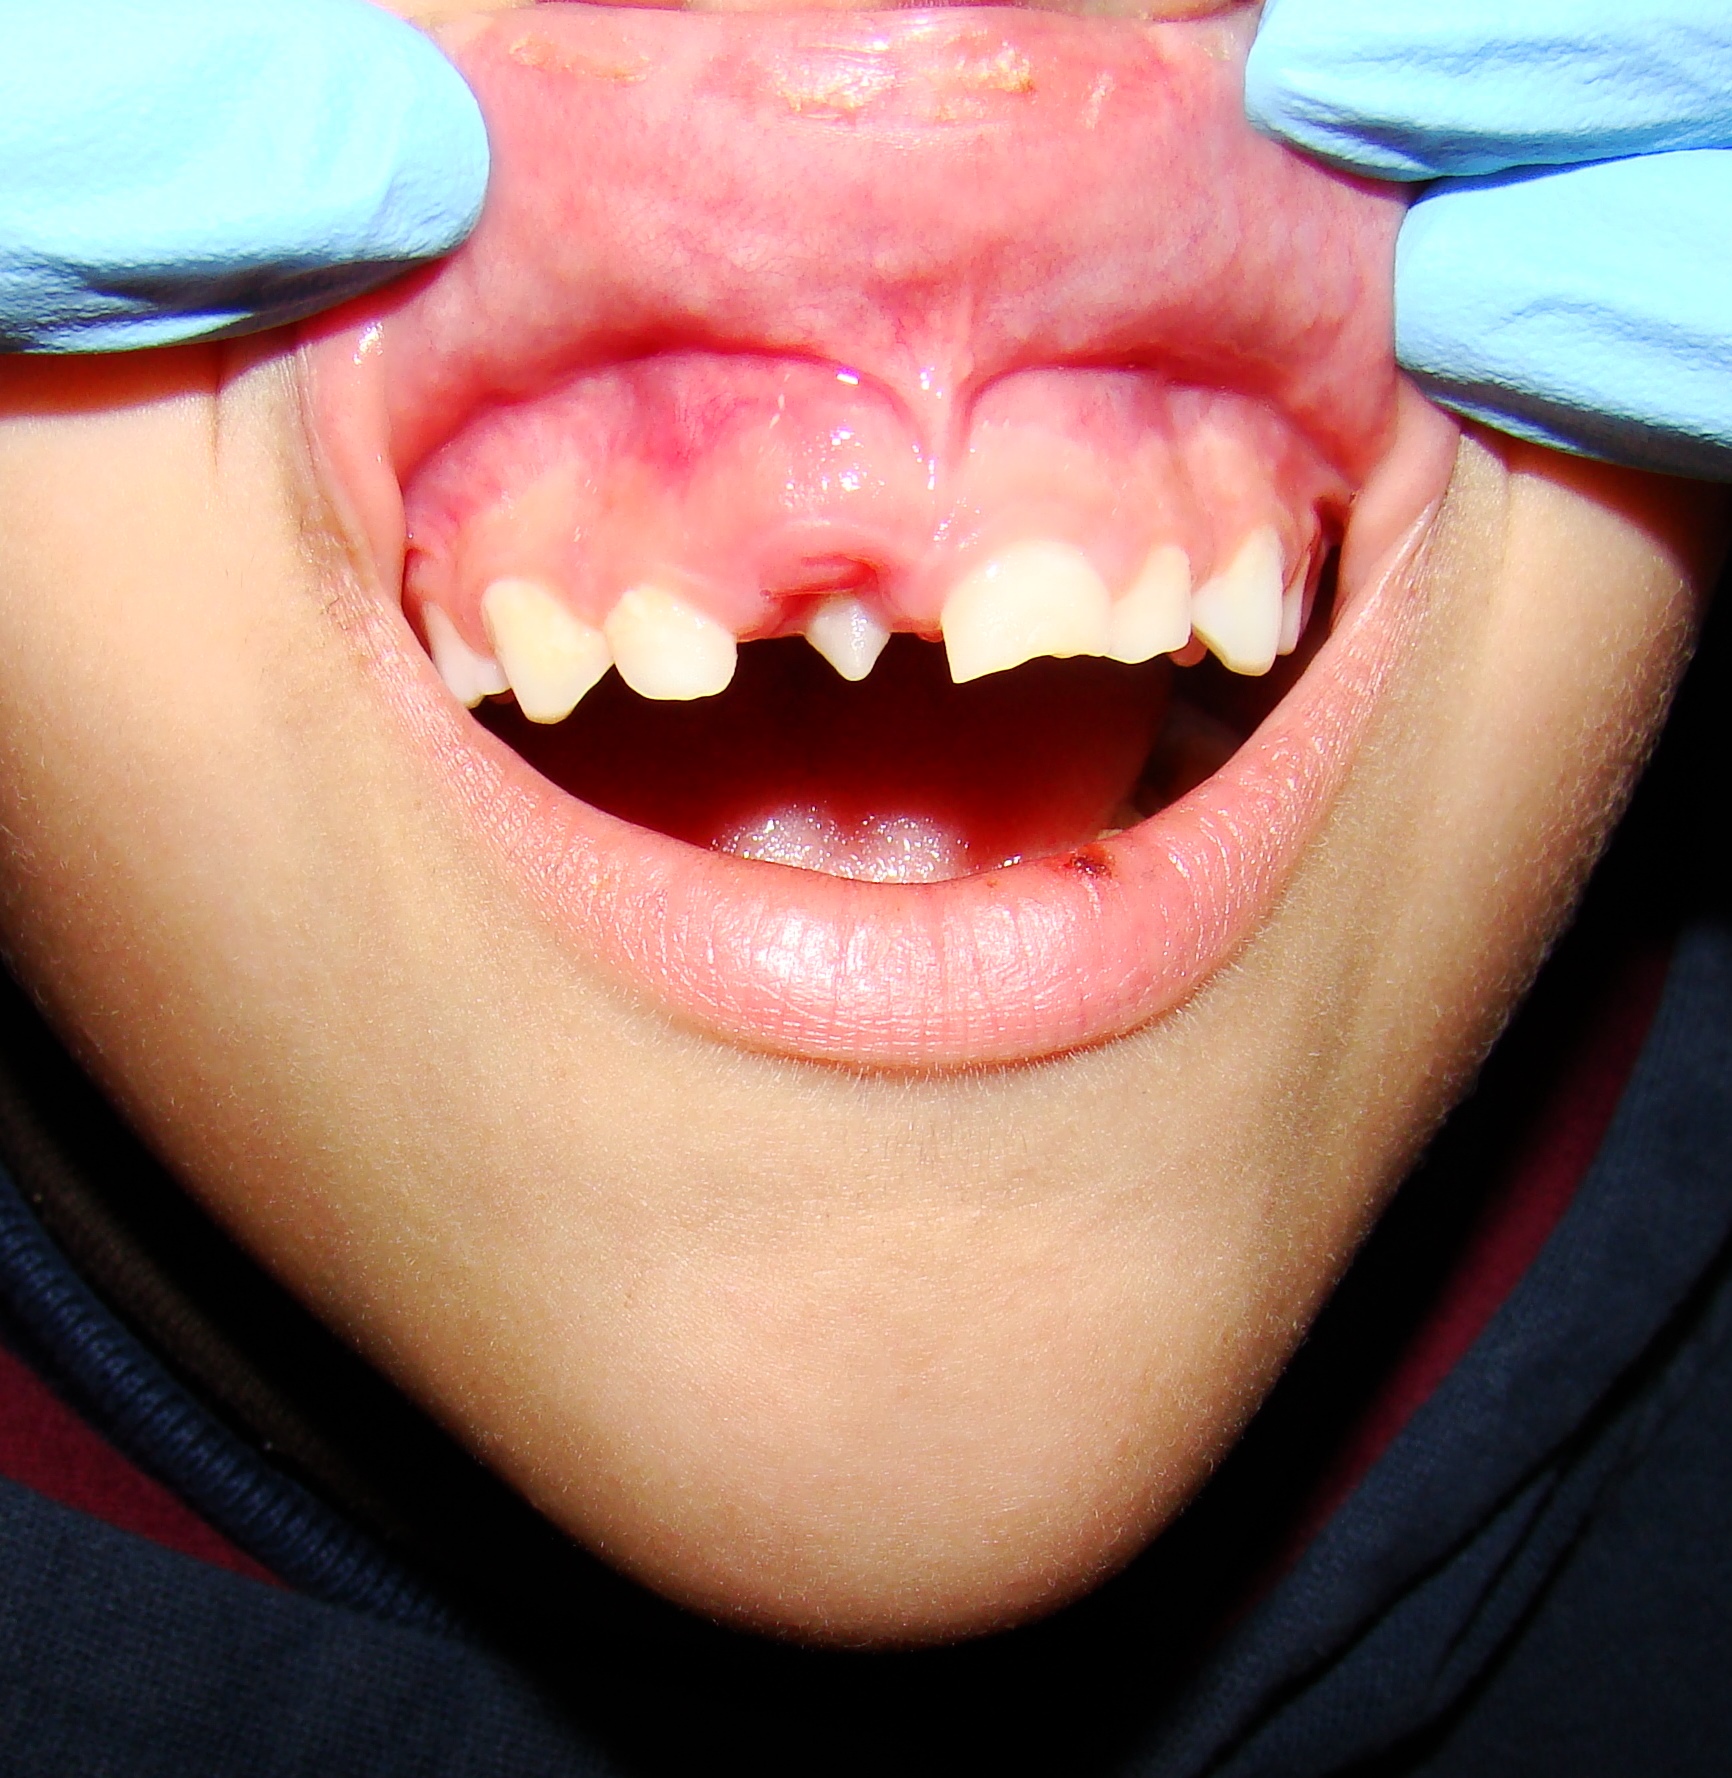 Diente Supernumerario o Hiperdoncia: causas Clinica Dental Erica